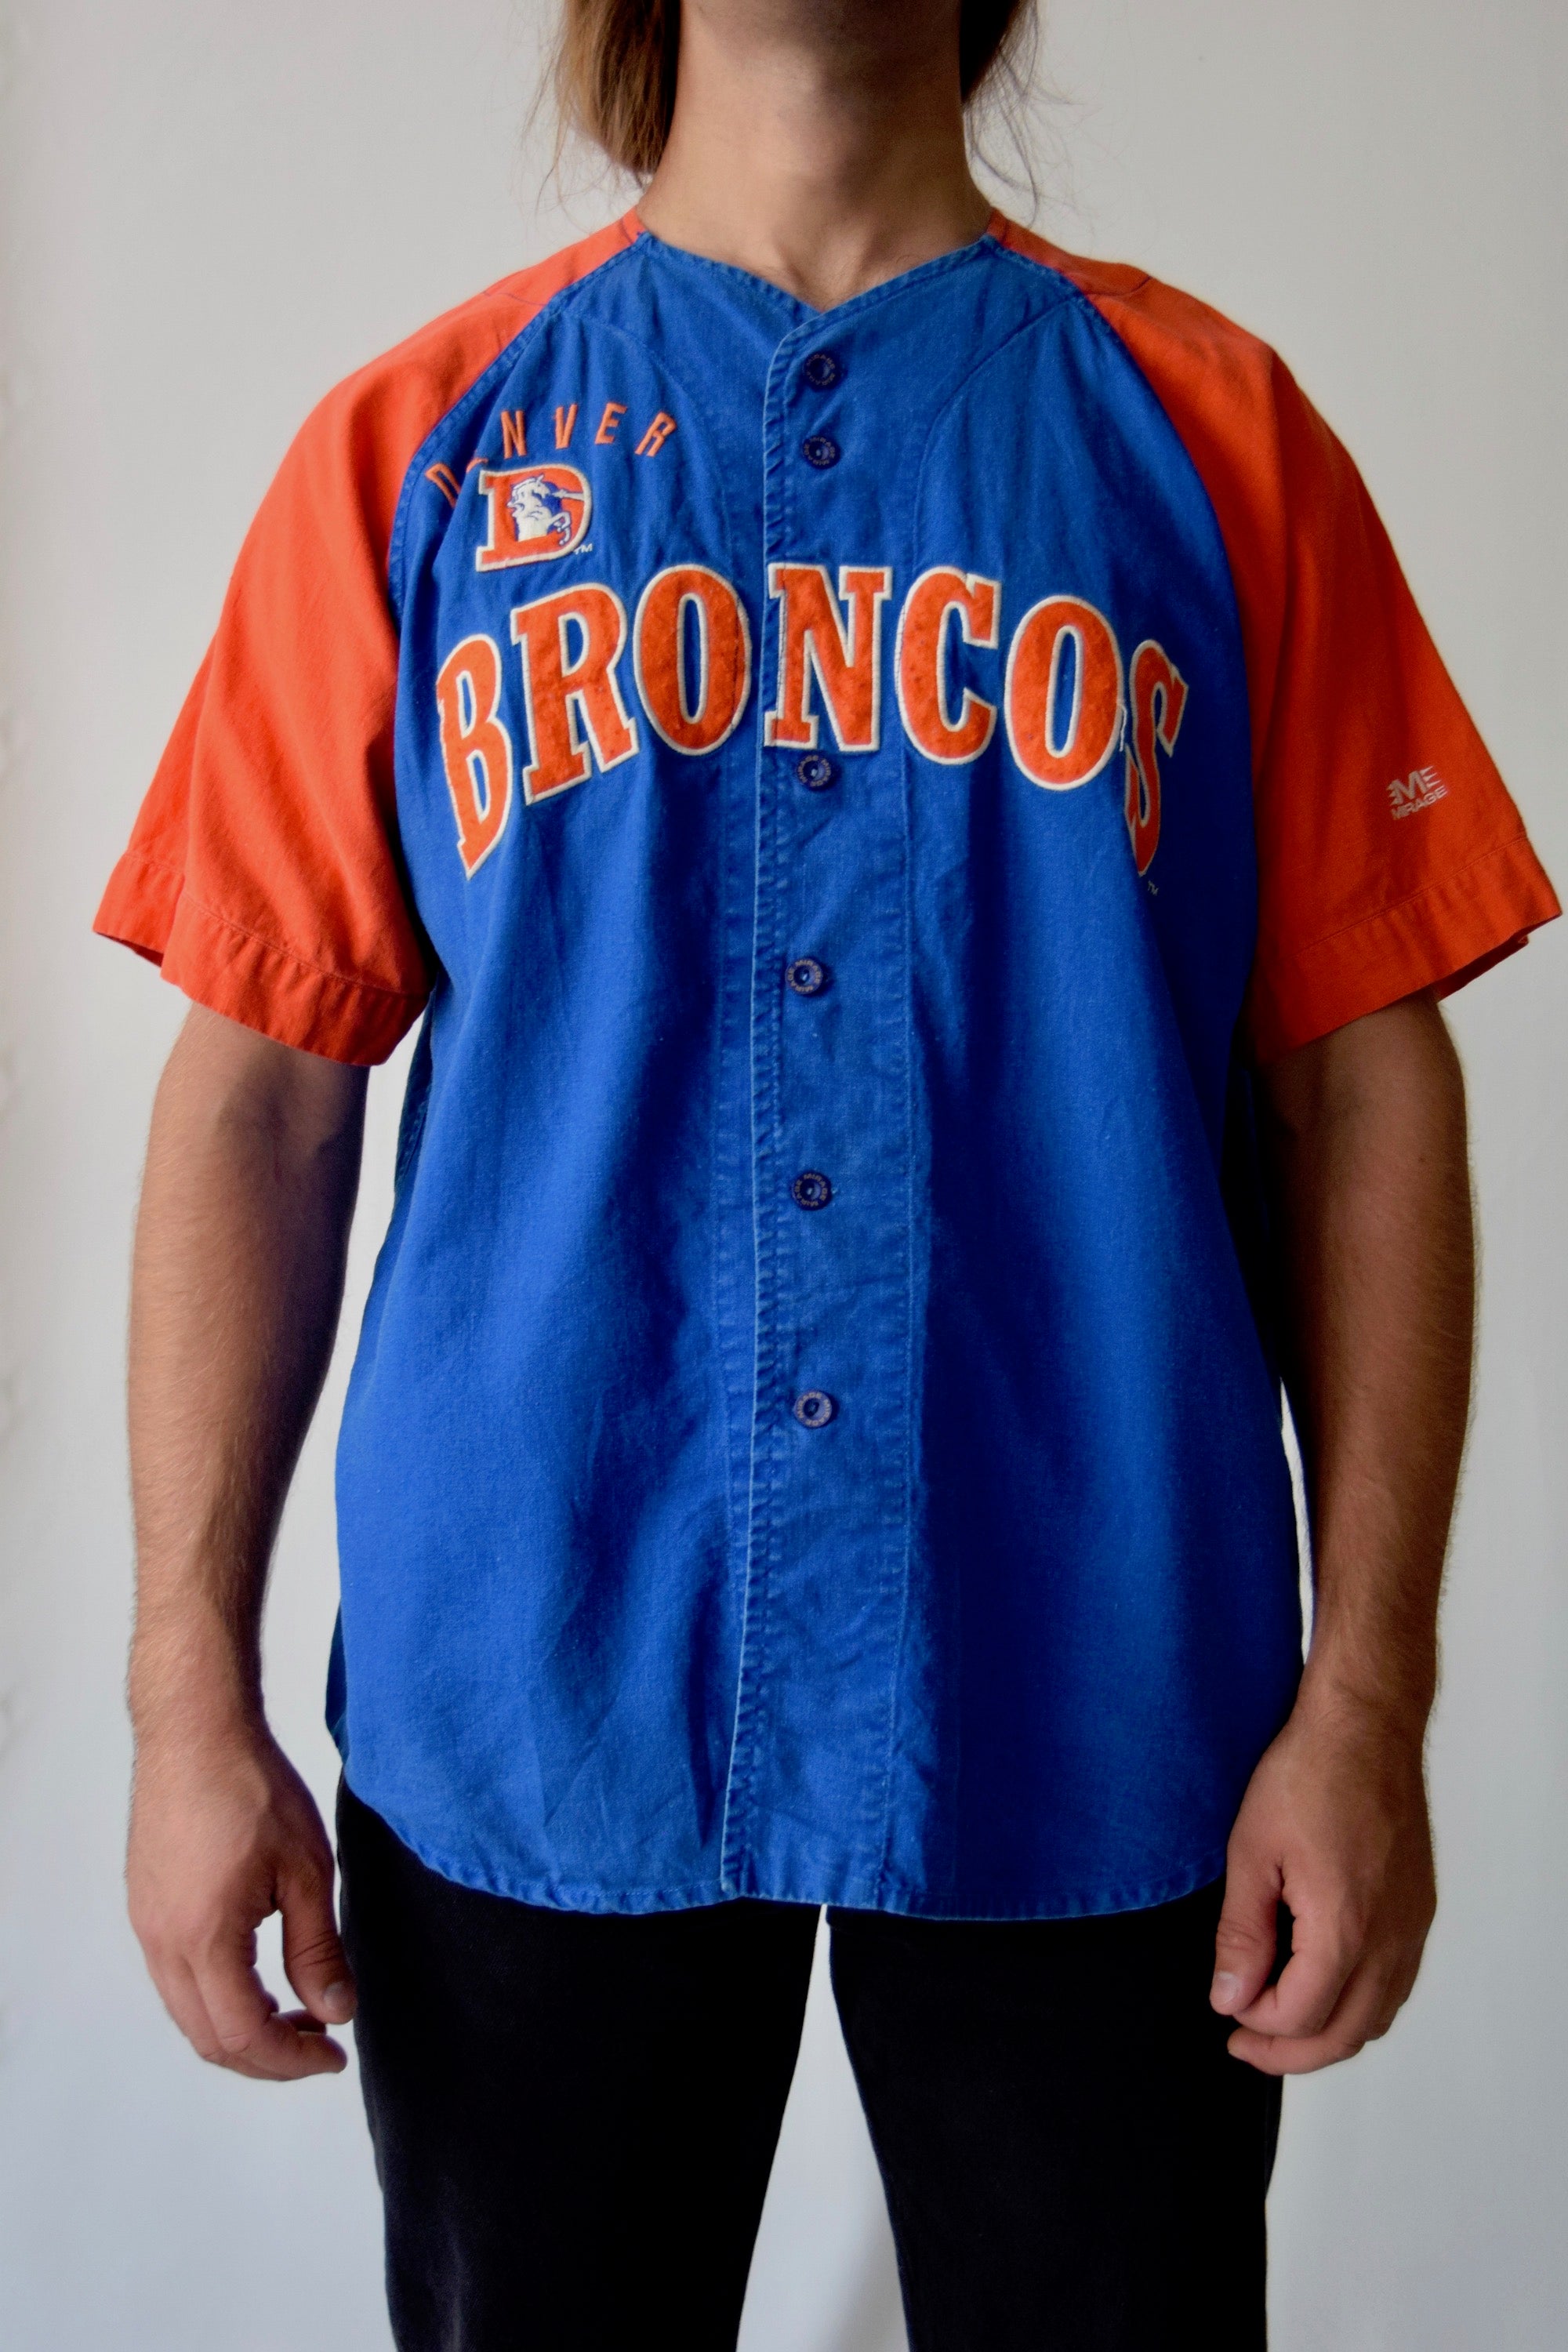 Vintage NFL Denver Broncos Jersey